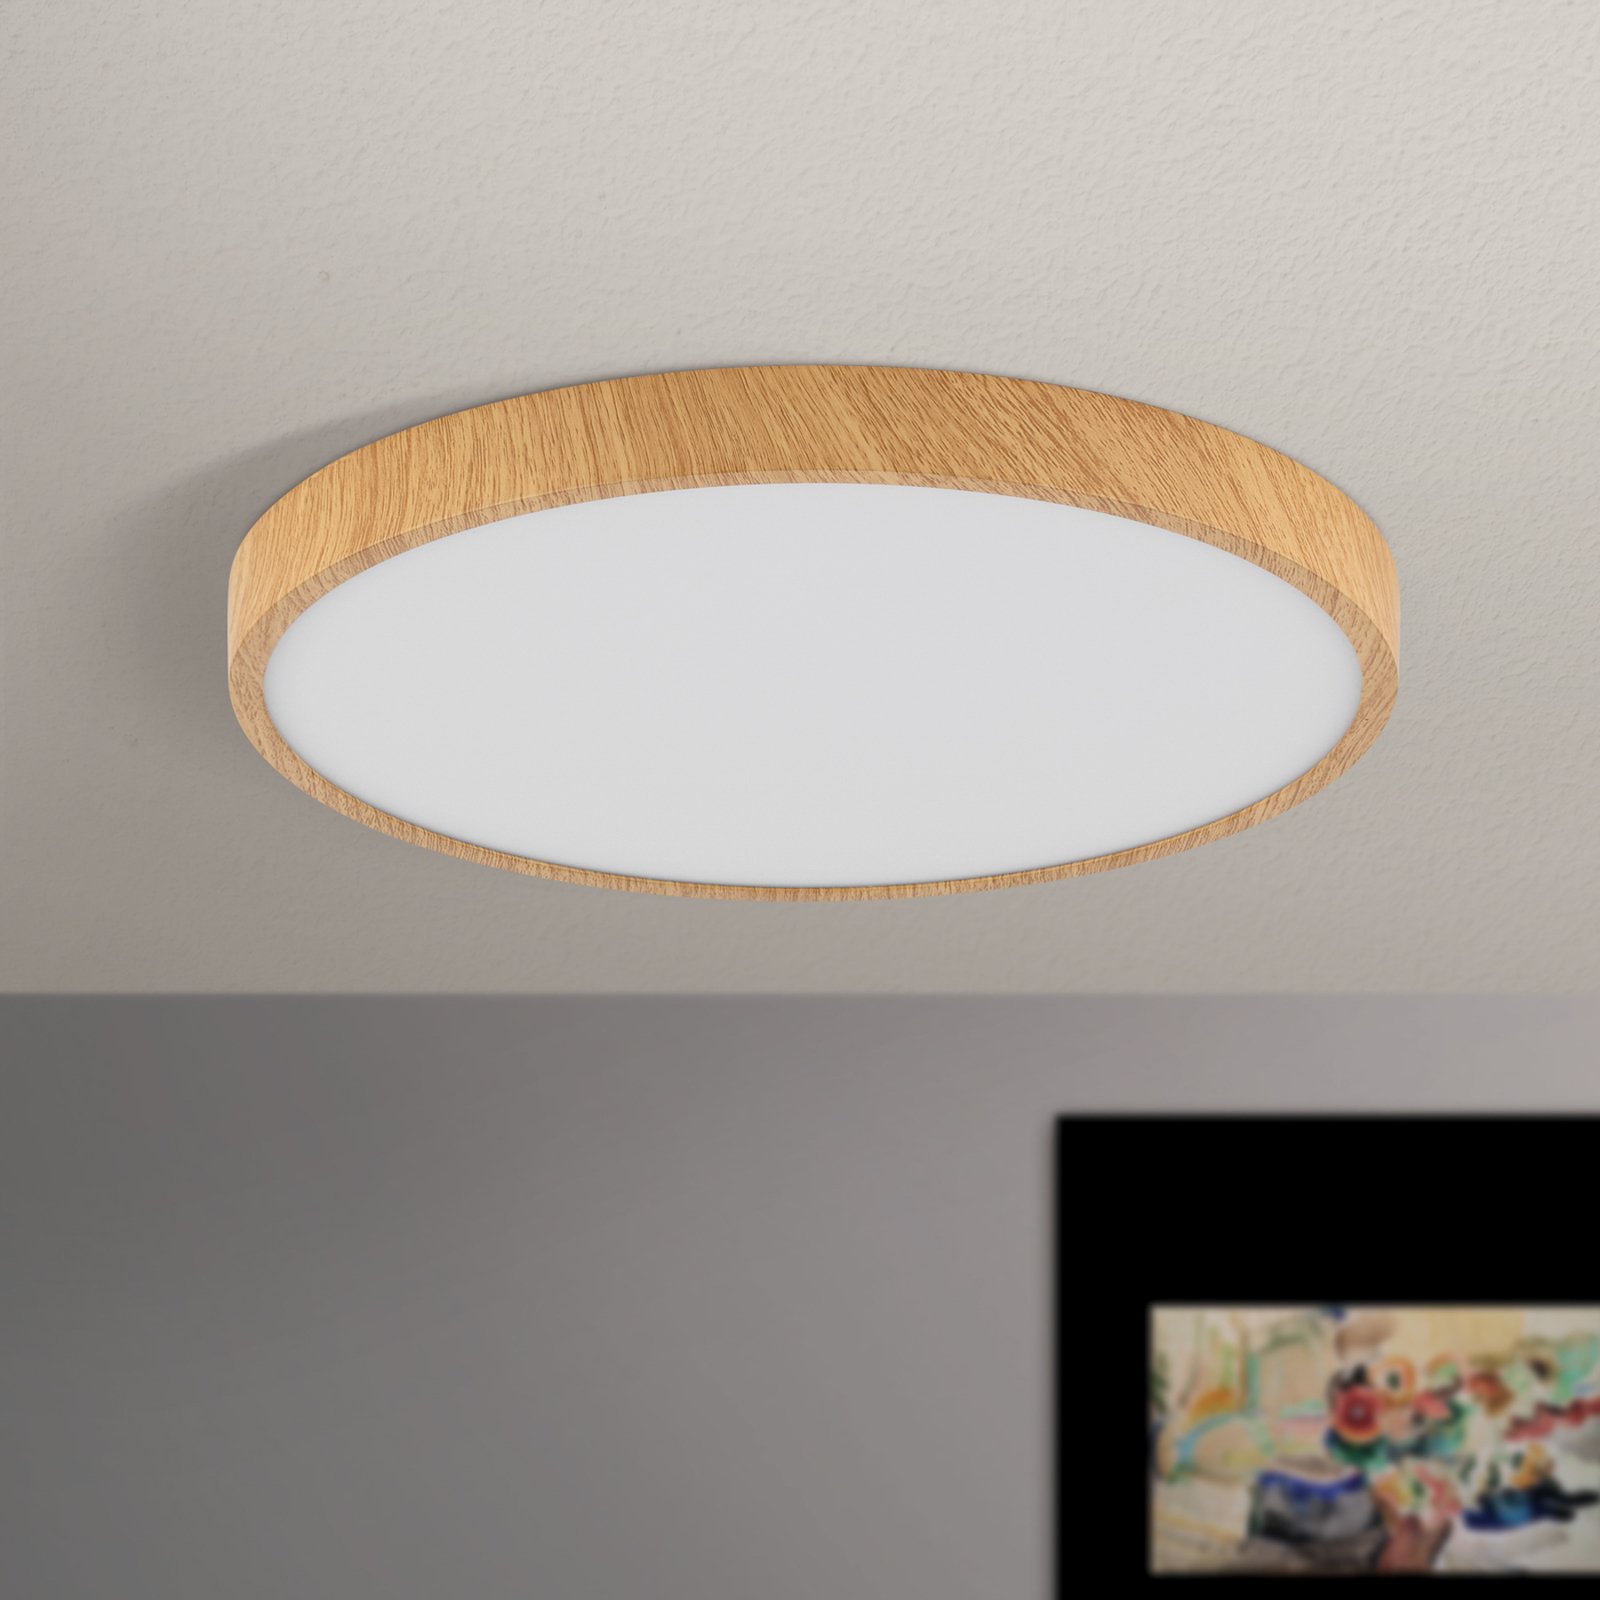 LED-Deckenleuchte Bully mit Holz-Optik, Ø 28 cm